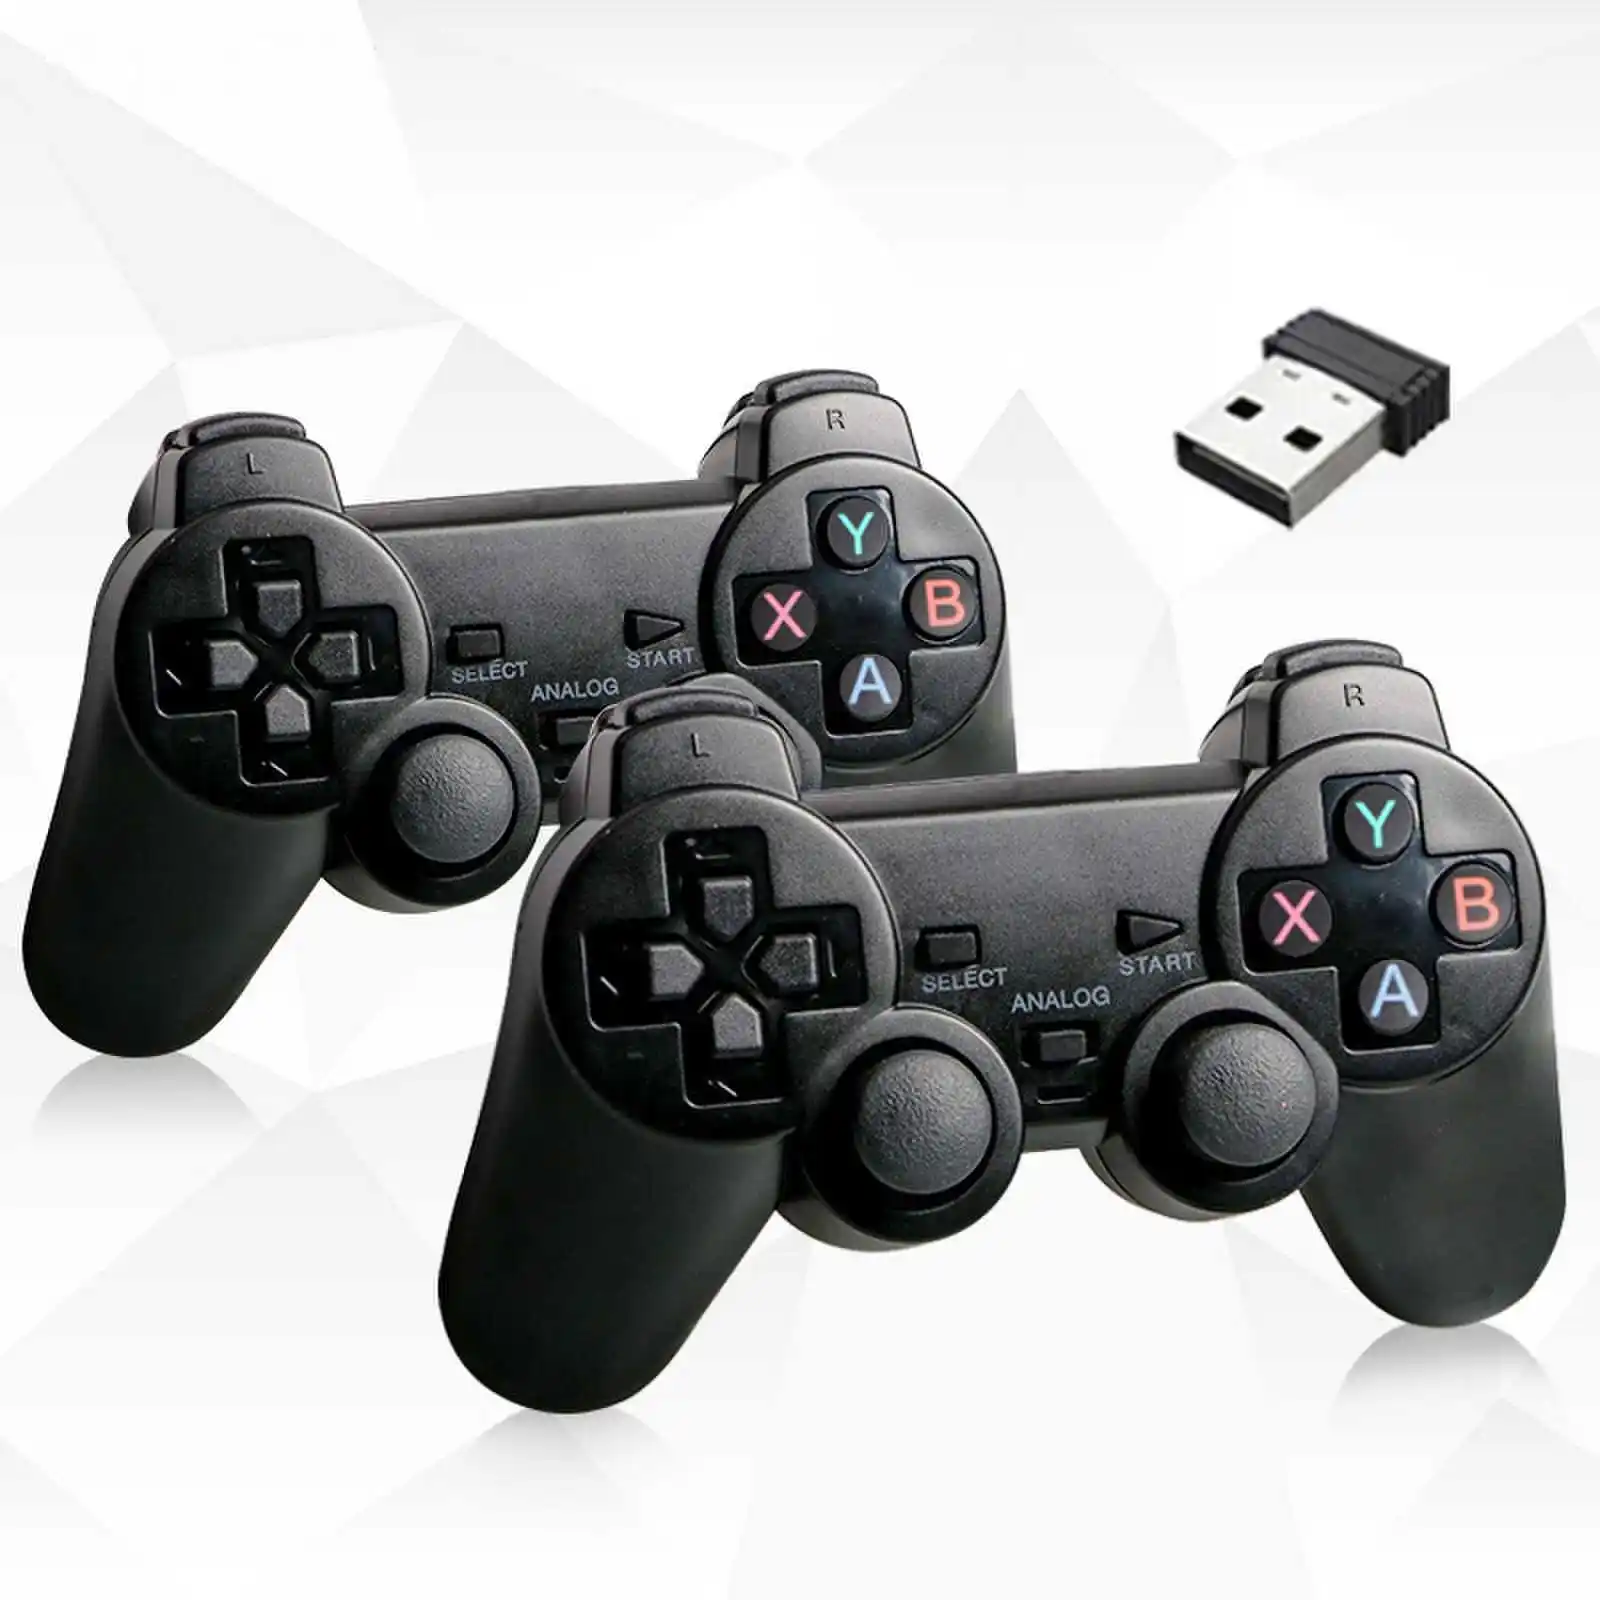 Manette de jeu Double battle sans fil 2.4G, Joystick, contrôleur de jeu Usb pour PS3, PC, Android, IOS, TV, offre spéciale